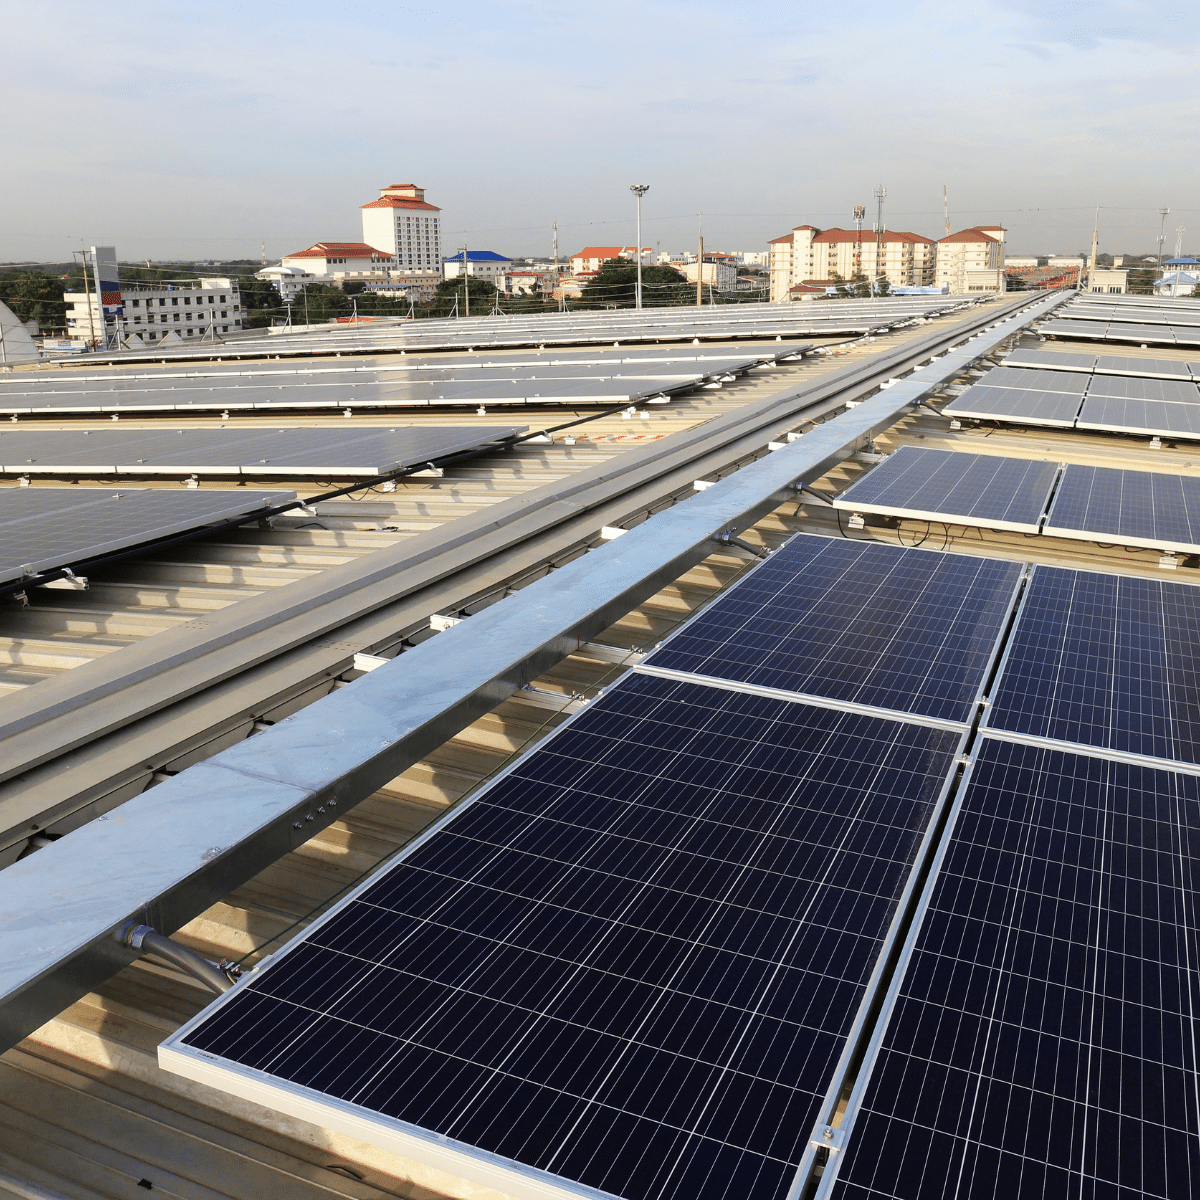 Installation de photovoltaique sur le toit d'un centre commercial